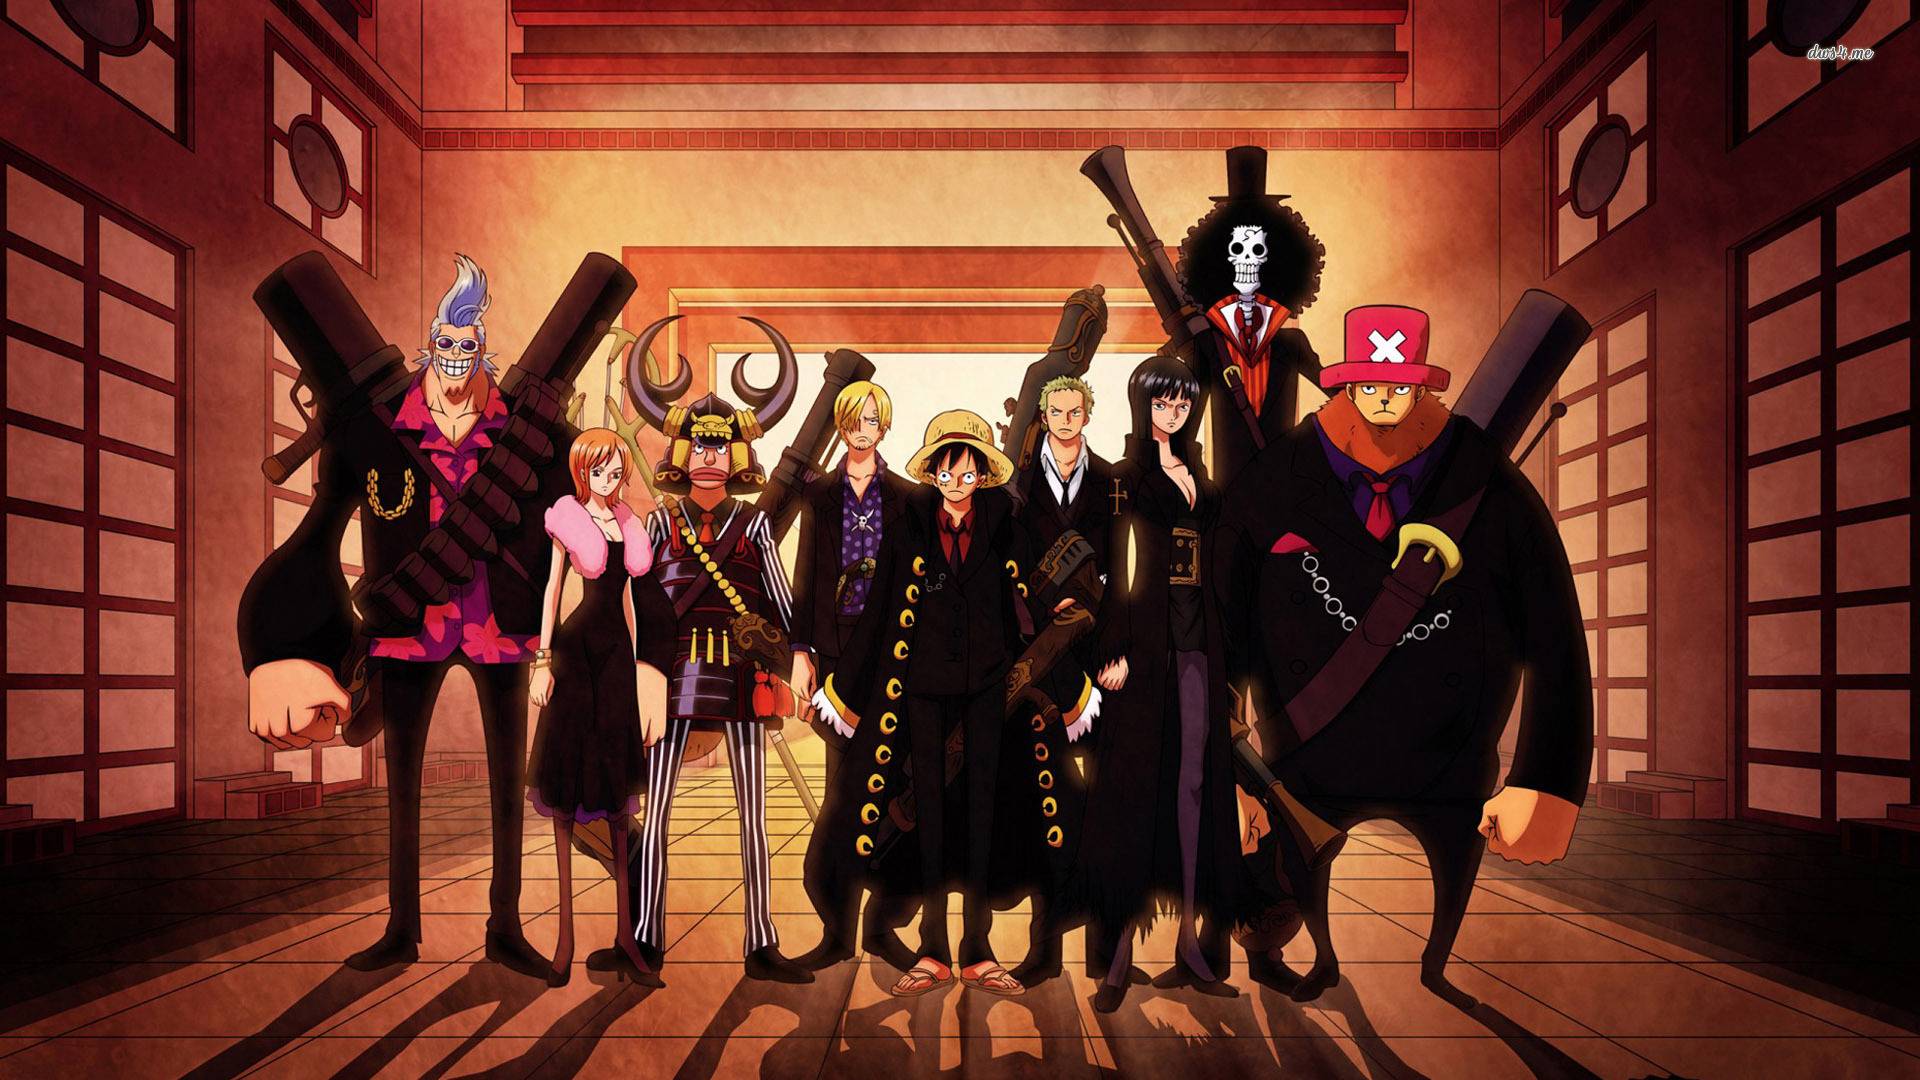 Hình nền One Piece Crew: Eiichiro Oda đã xây dựng một thế giới đầy màu sắc và những nhân vật đáng yêu trong One Piece, và đội hình của nhóm thuộc về hải tặc Mũ Rơm là một trong số đó. Hãy xem hình nền One Piece Crew để cảm nhận được sự đoàn kết và tinh thần chiến đấu của những người hùng này.